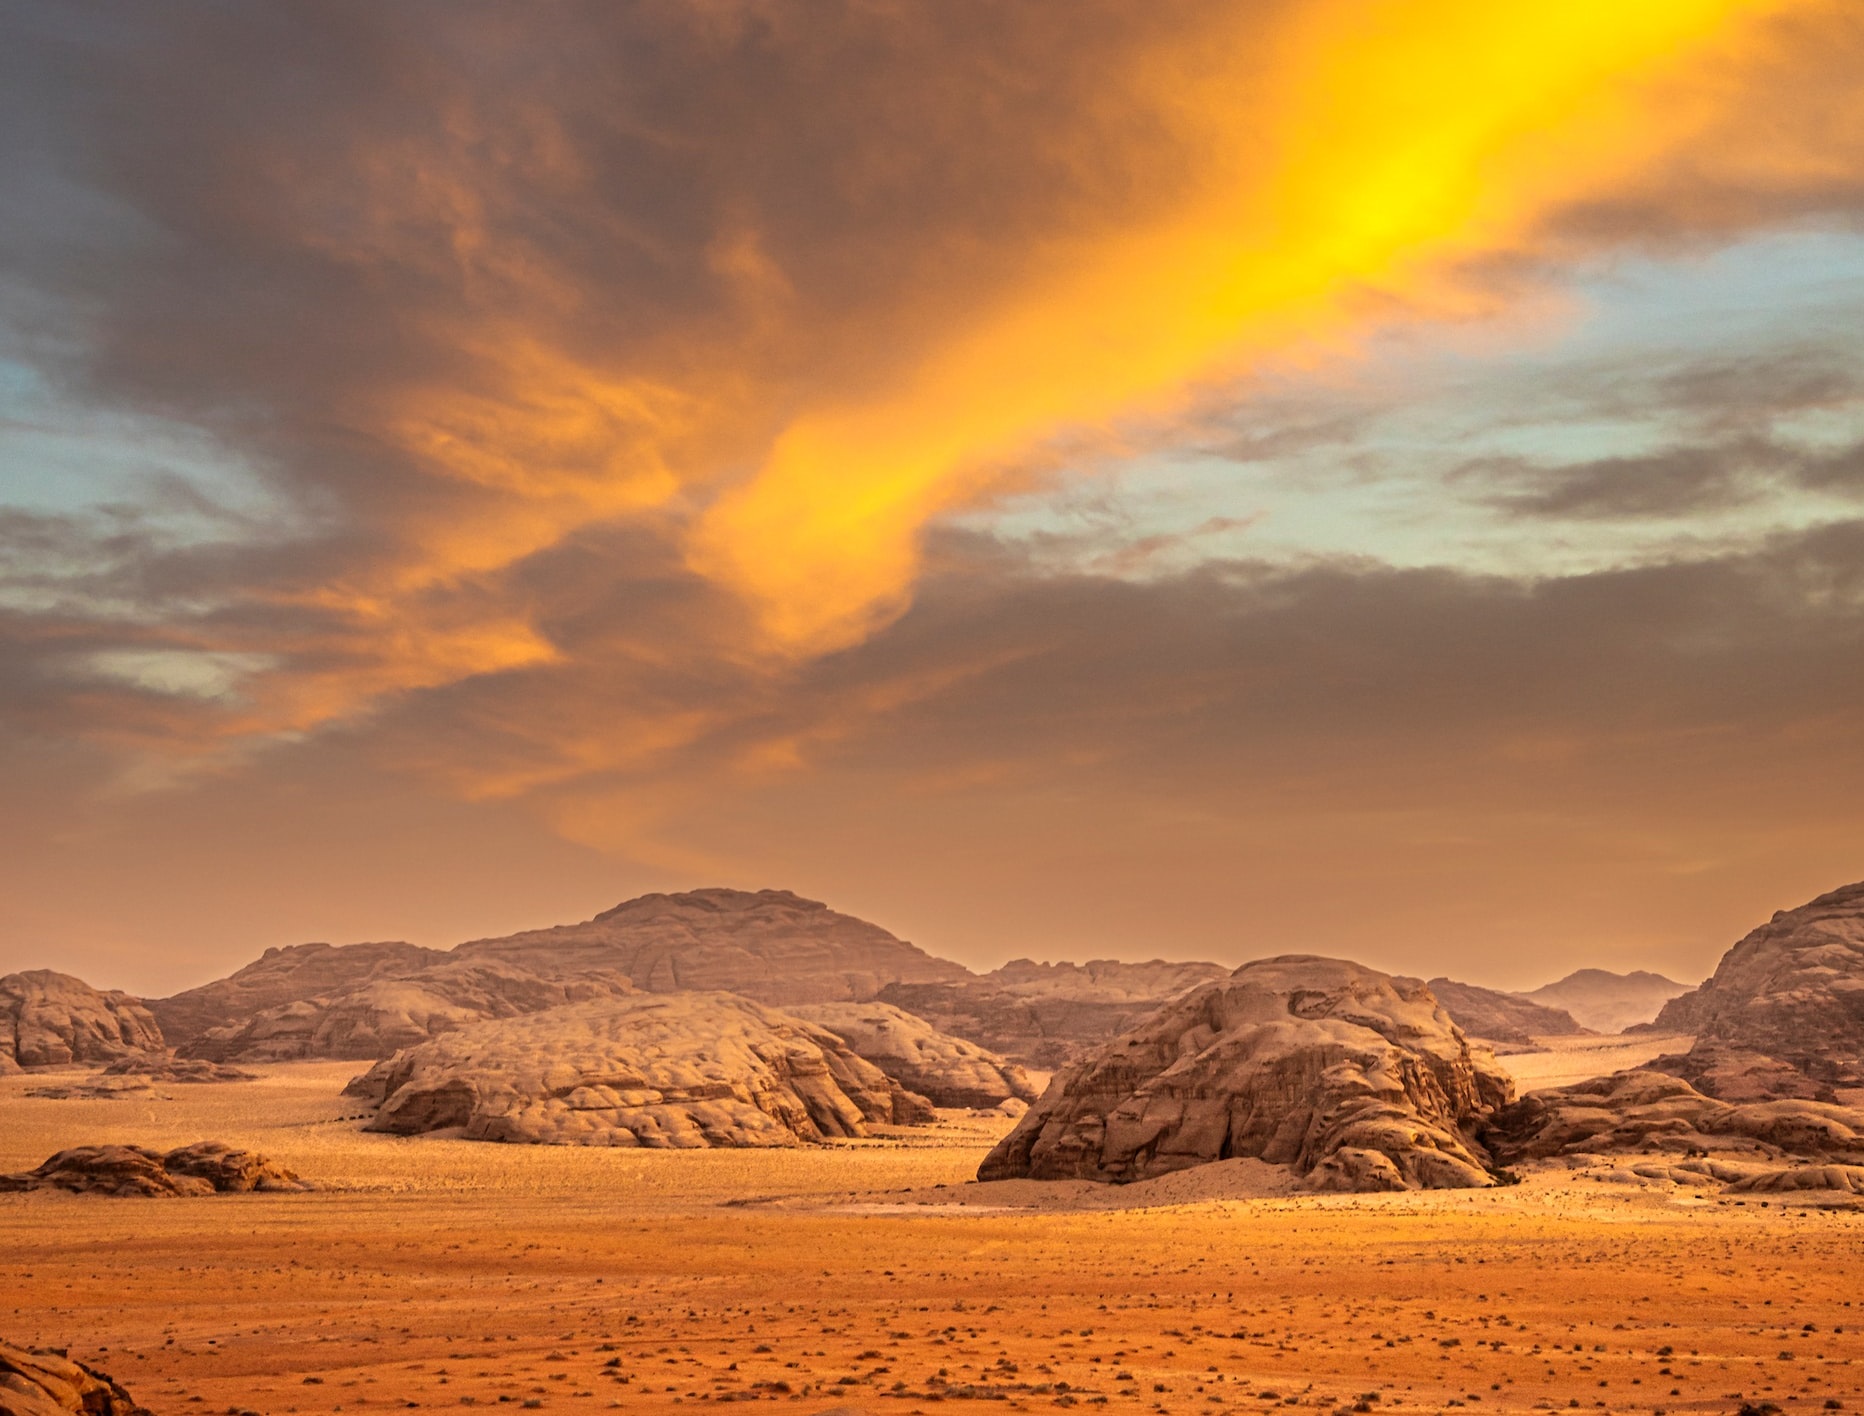 Movies Filmed in Wadi Rum- As Martian as it gets. Wadi Rum